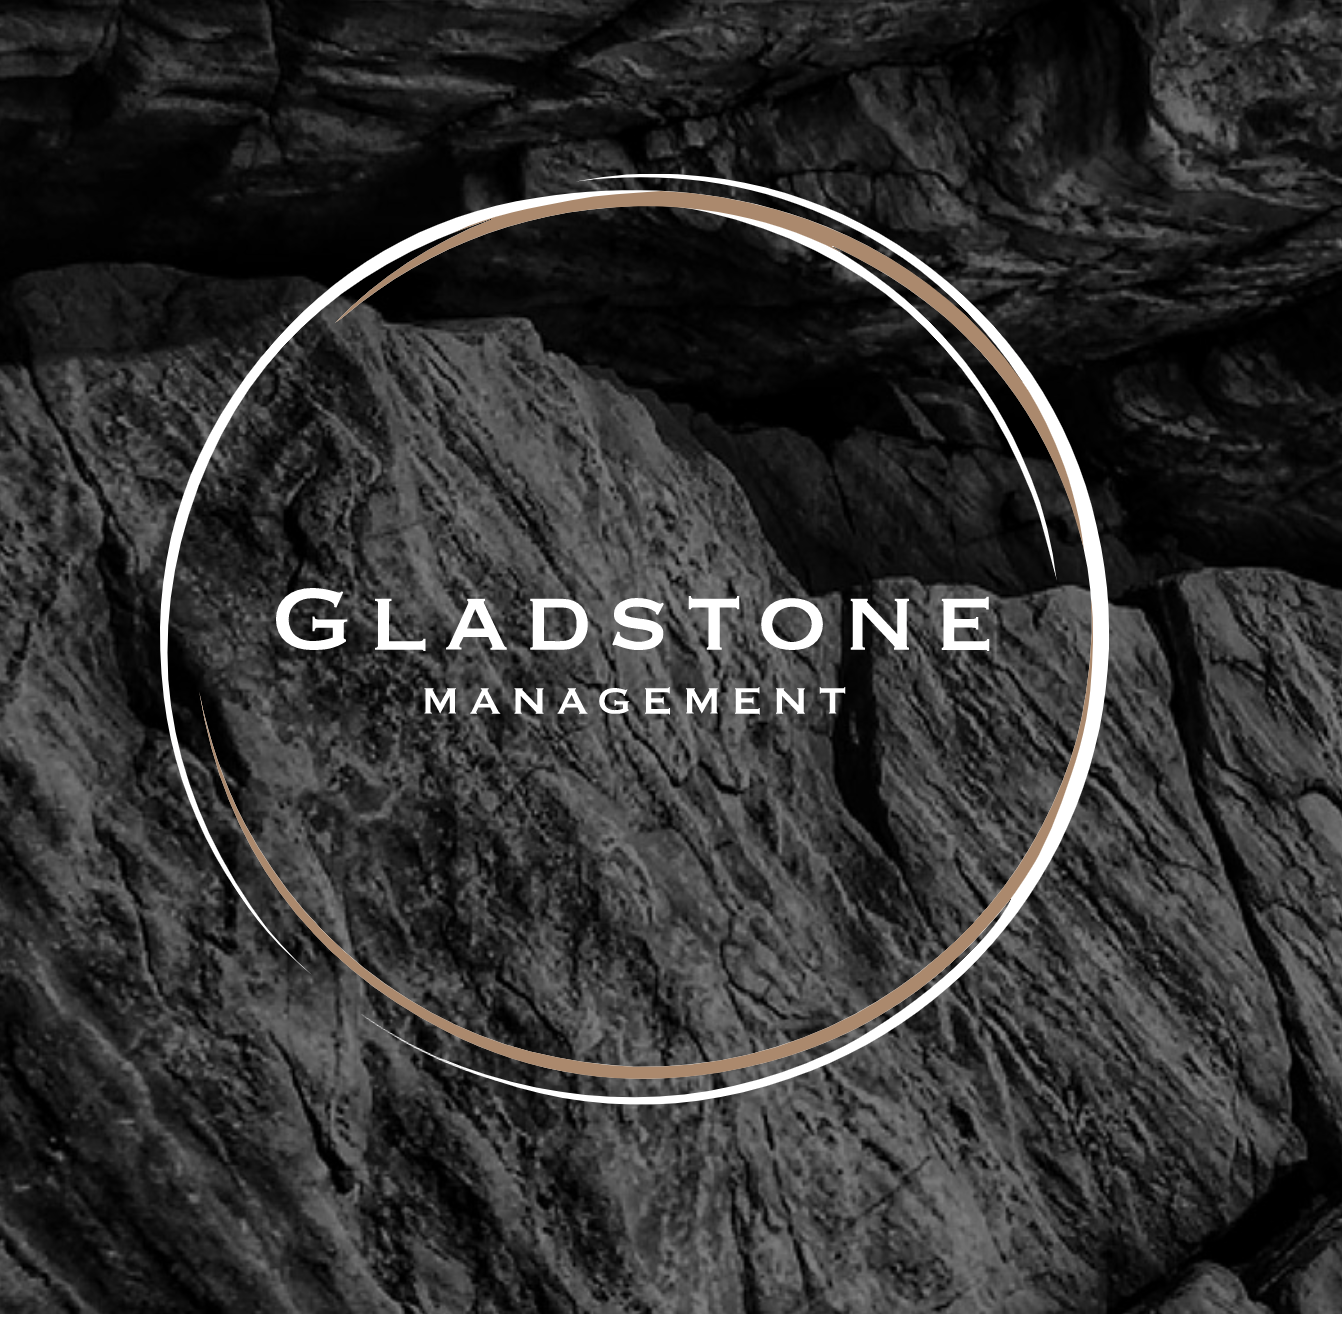 Gladstone Management - London, London S, United Kingdom